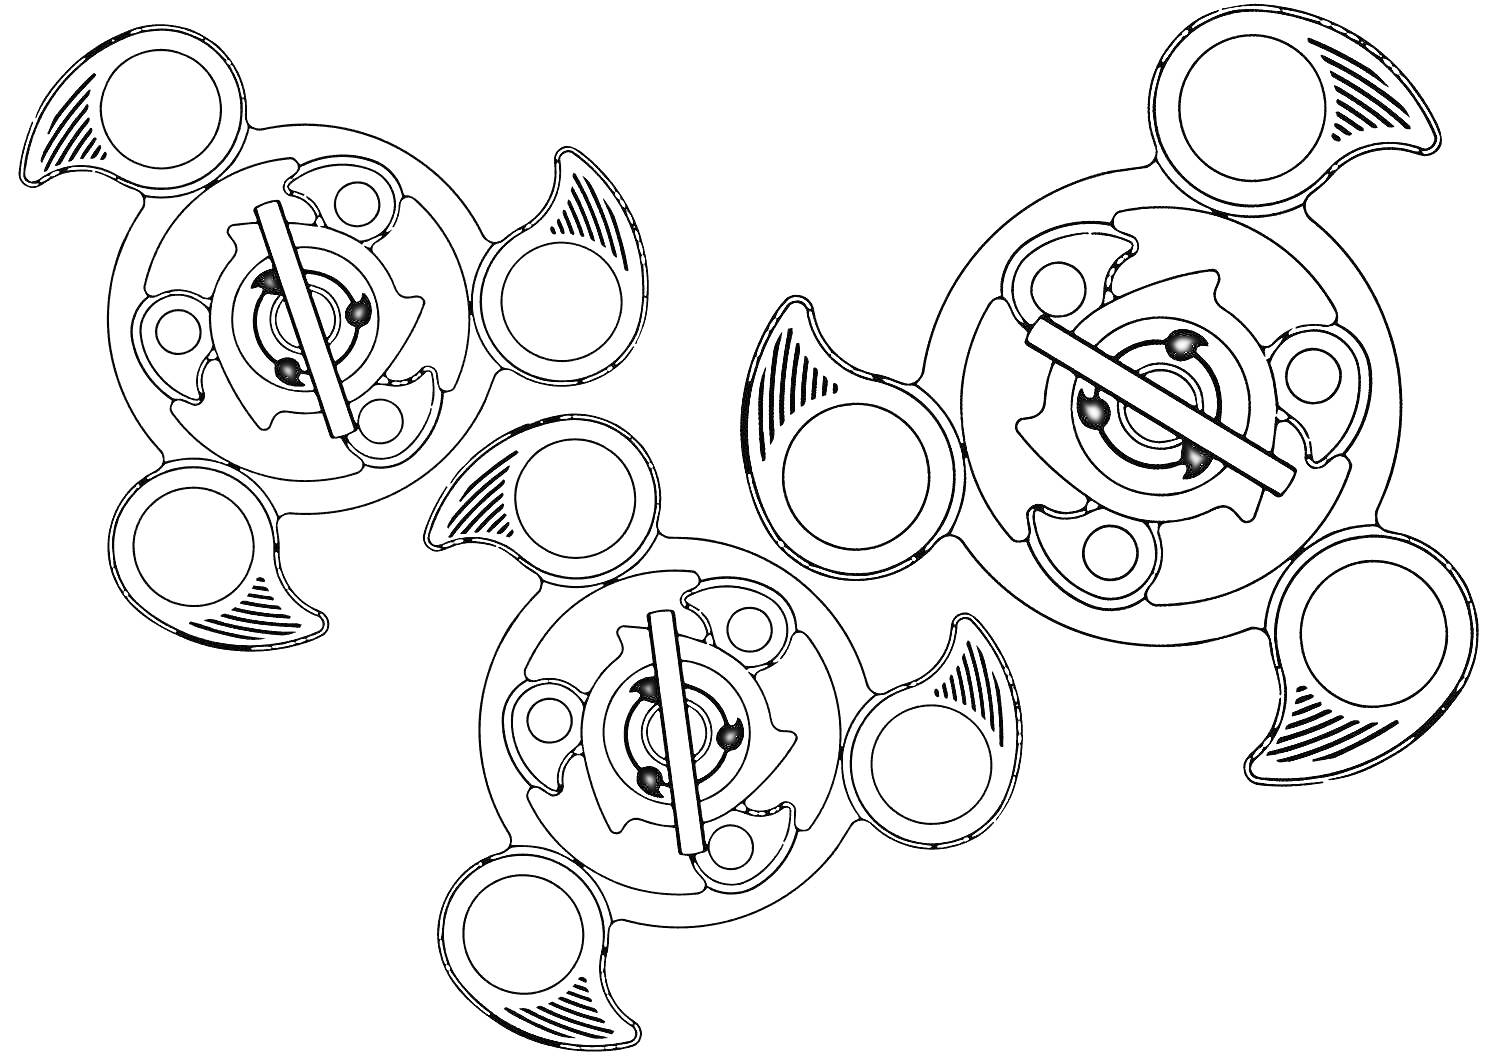 Три спиннера с тремя лопастями и круглыми элементами